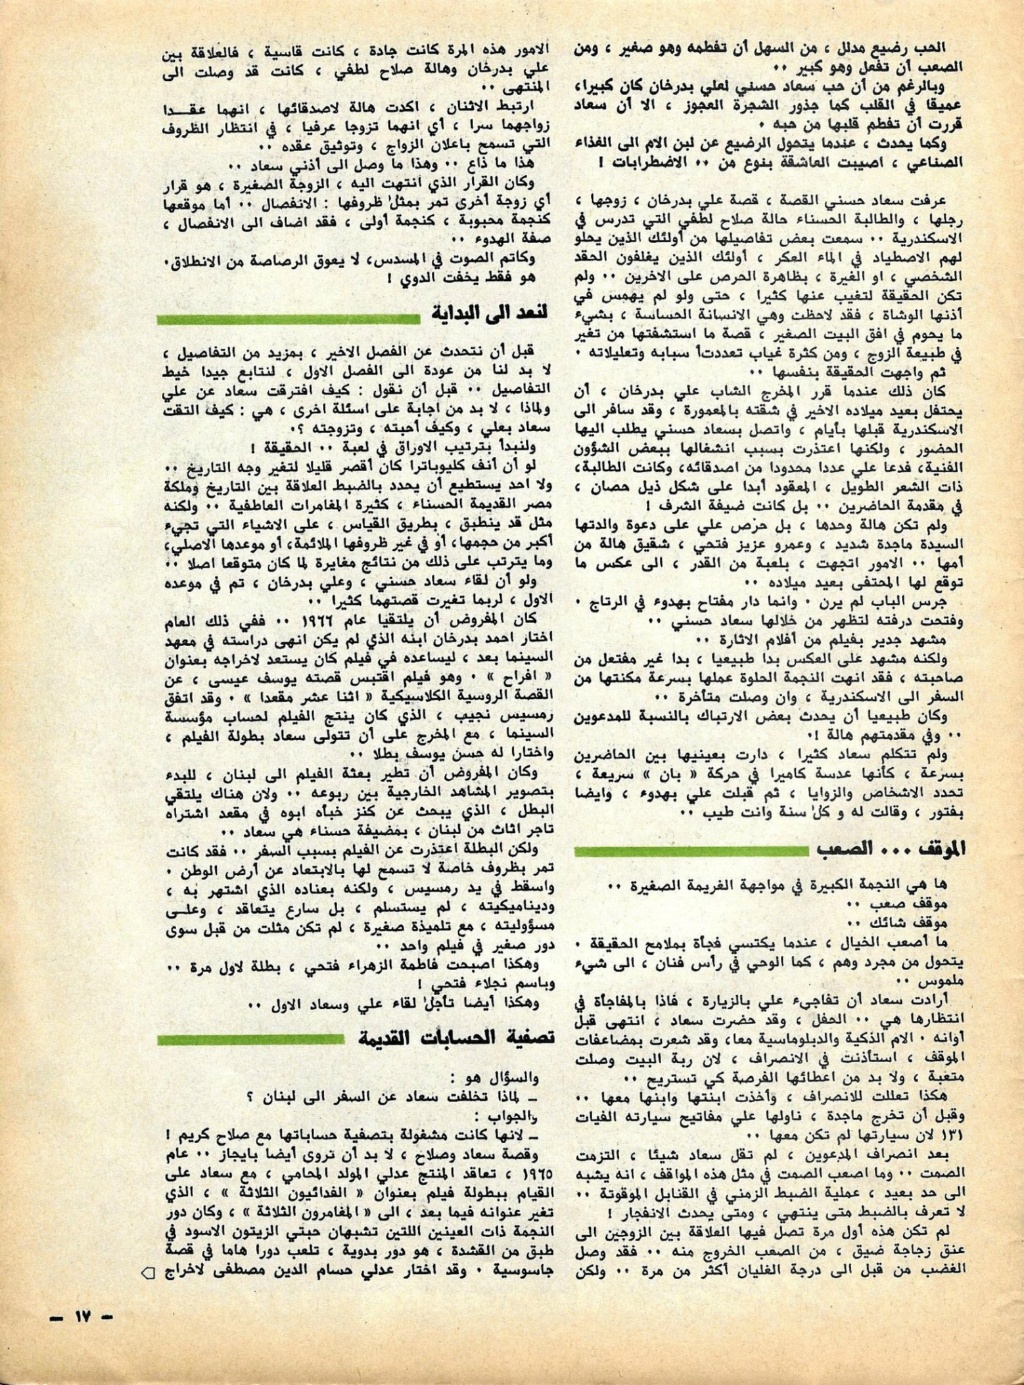 بدرخان - مقال صحفي : سعاد حسني وعلي بدرخان وقصة الحب الذي كان 1981 م 611